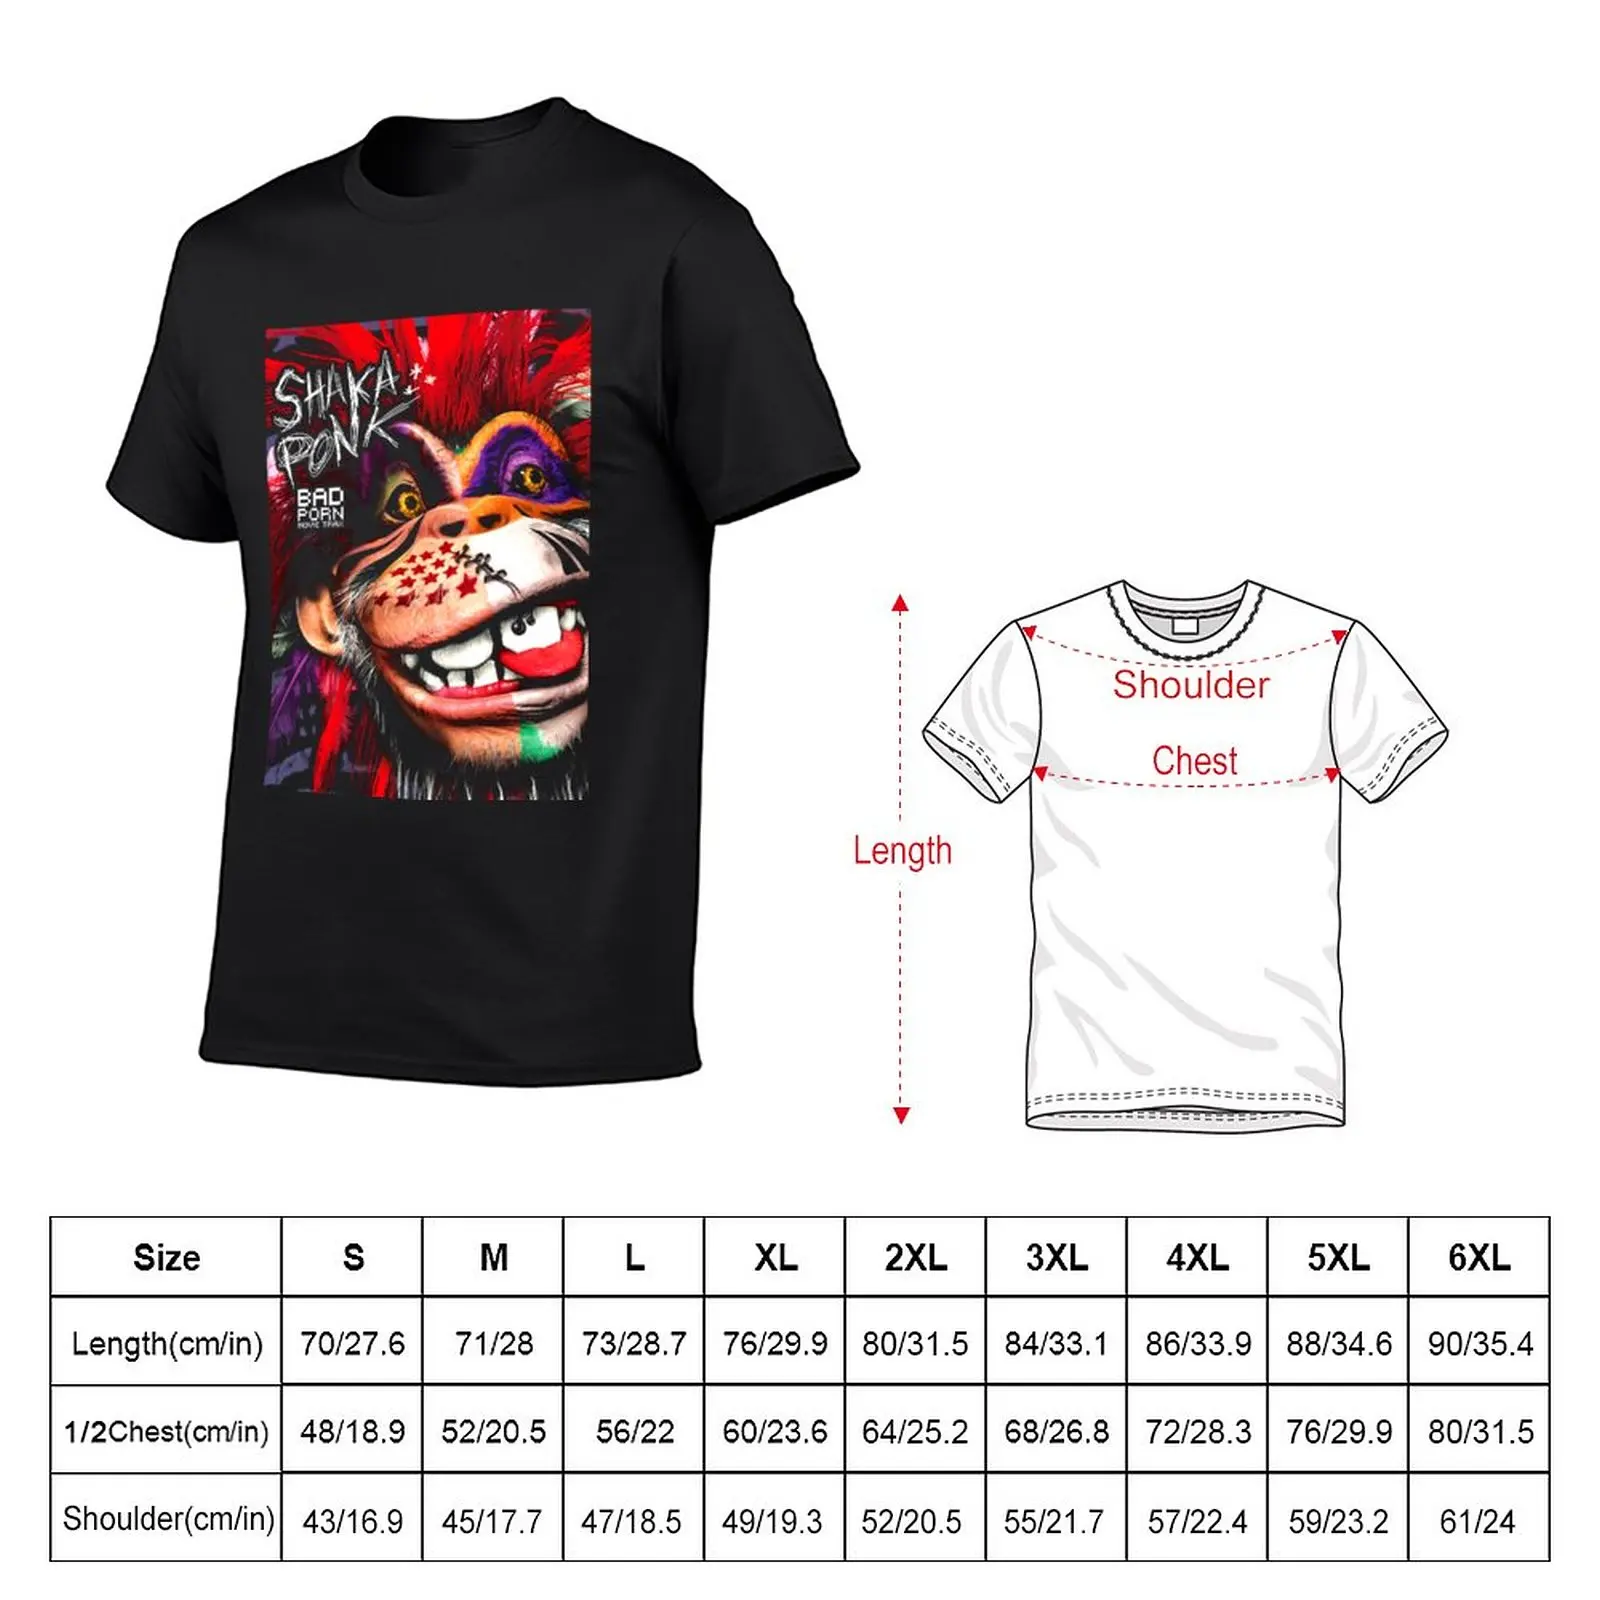 New shaka ponk pixel ape t-shirt camicie magliette grafiche magliette a maniche corte, uomo